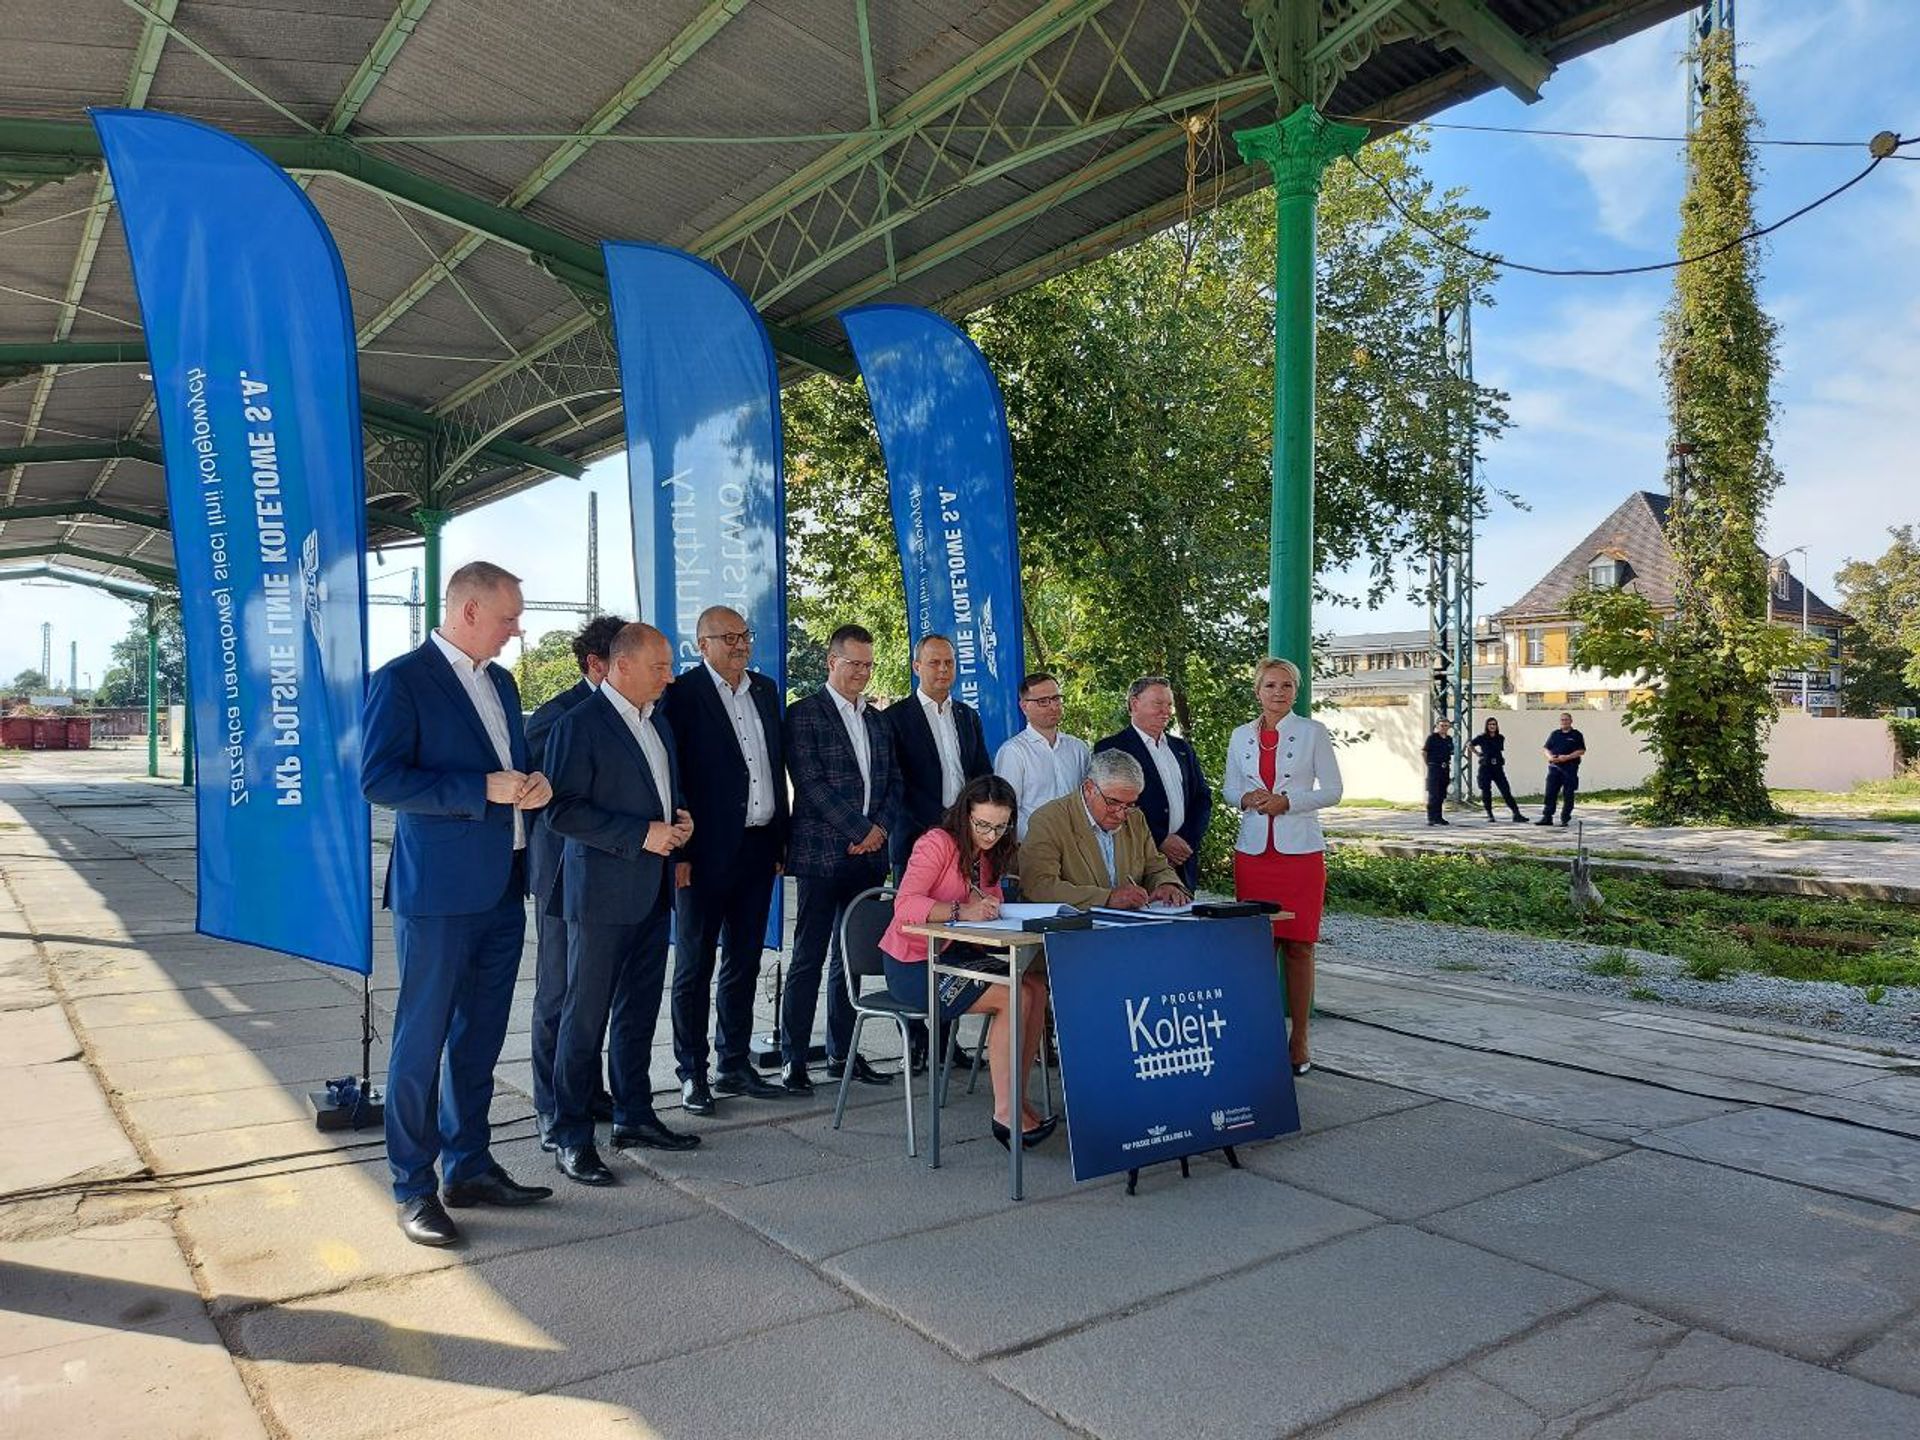 Podpisano umowy na remont Dworca Świebodzkiego we Wrocławiu i modernizację linii kolejowej Zgorzelec - Bogatynia